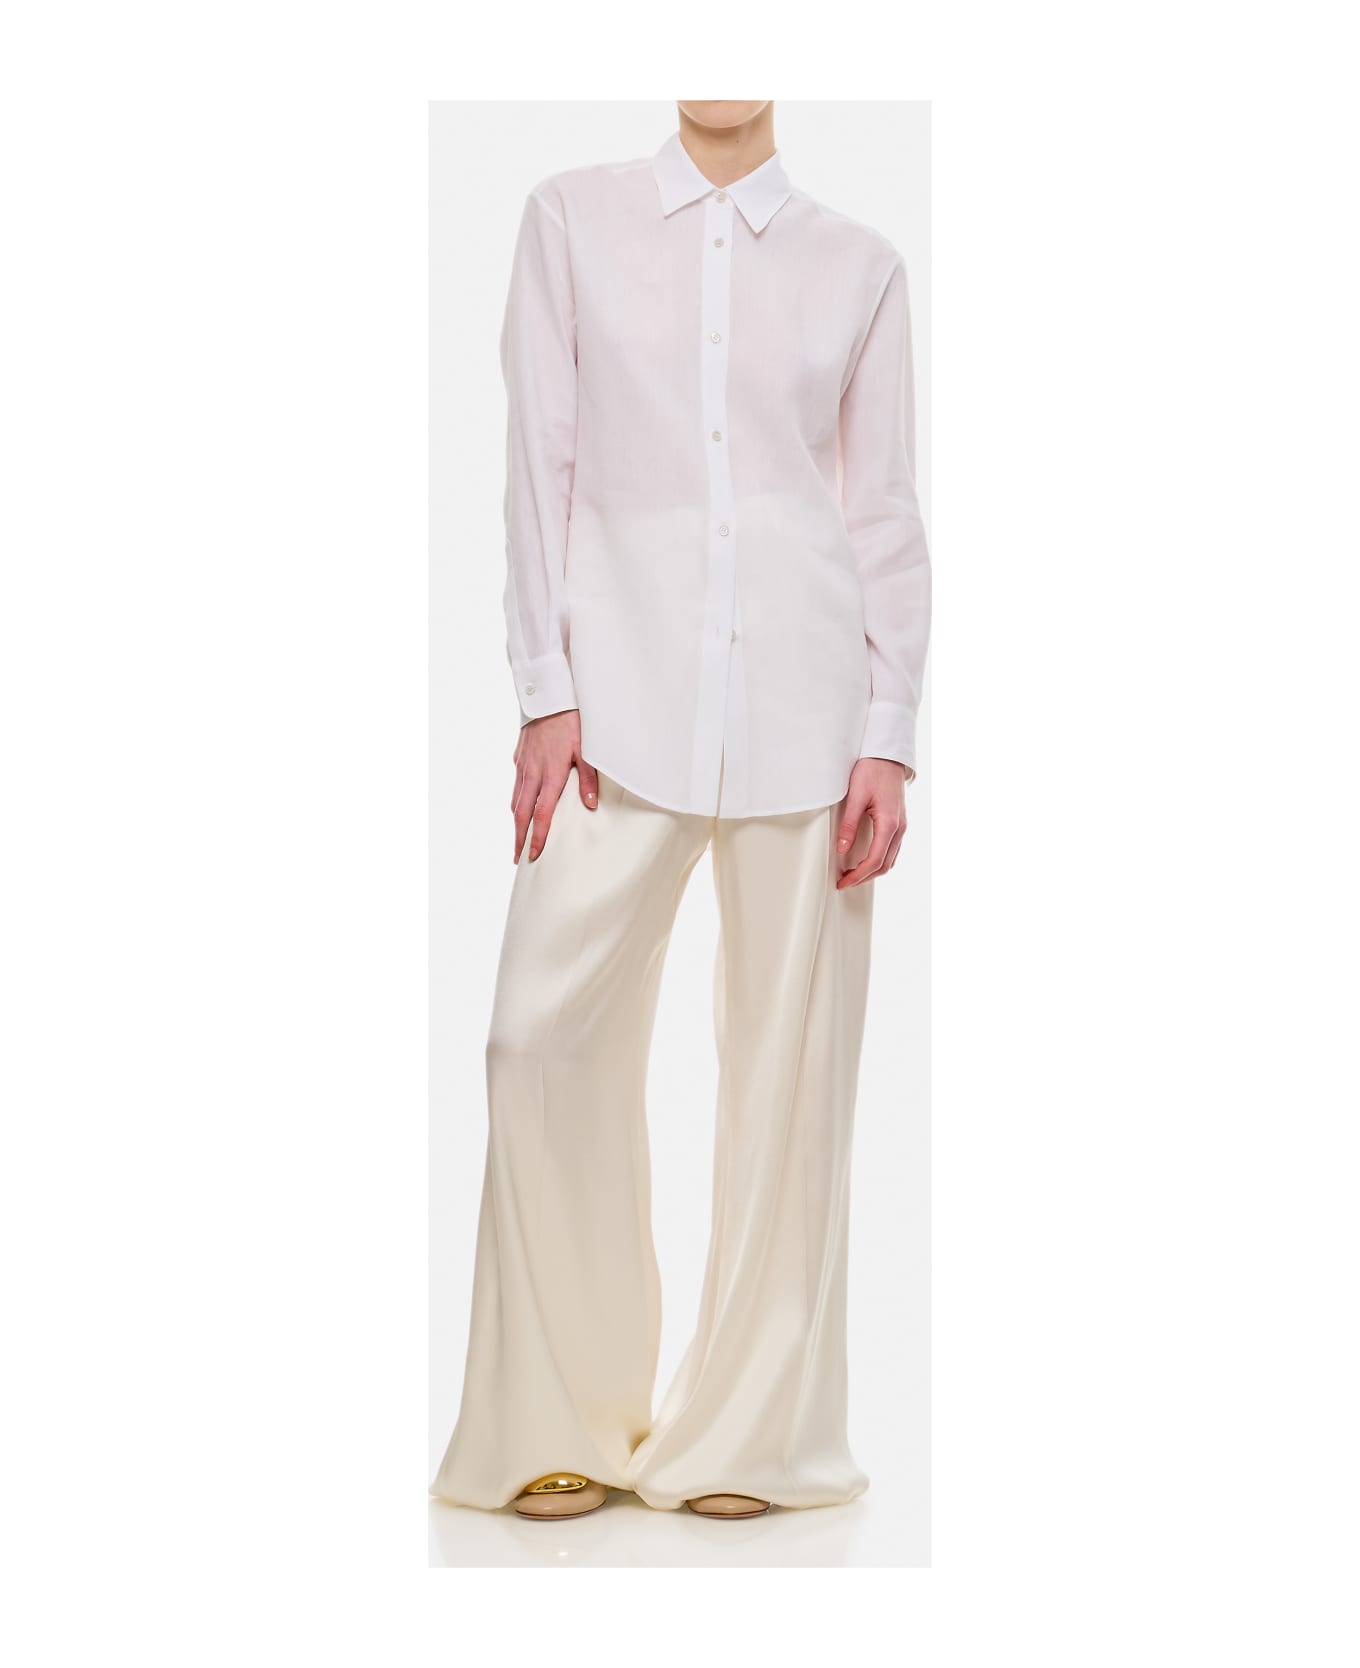 Gabriela Hearst Ferrara Cotton Shirt - White シャツ